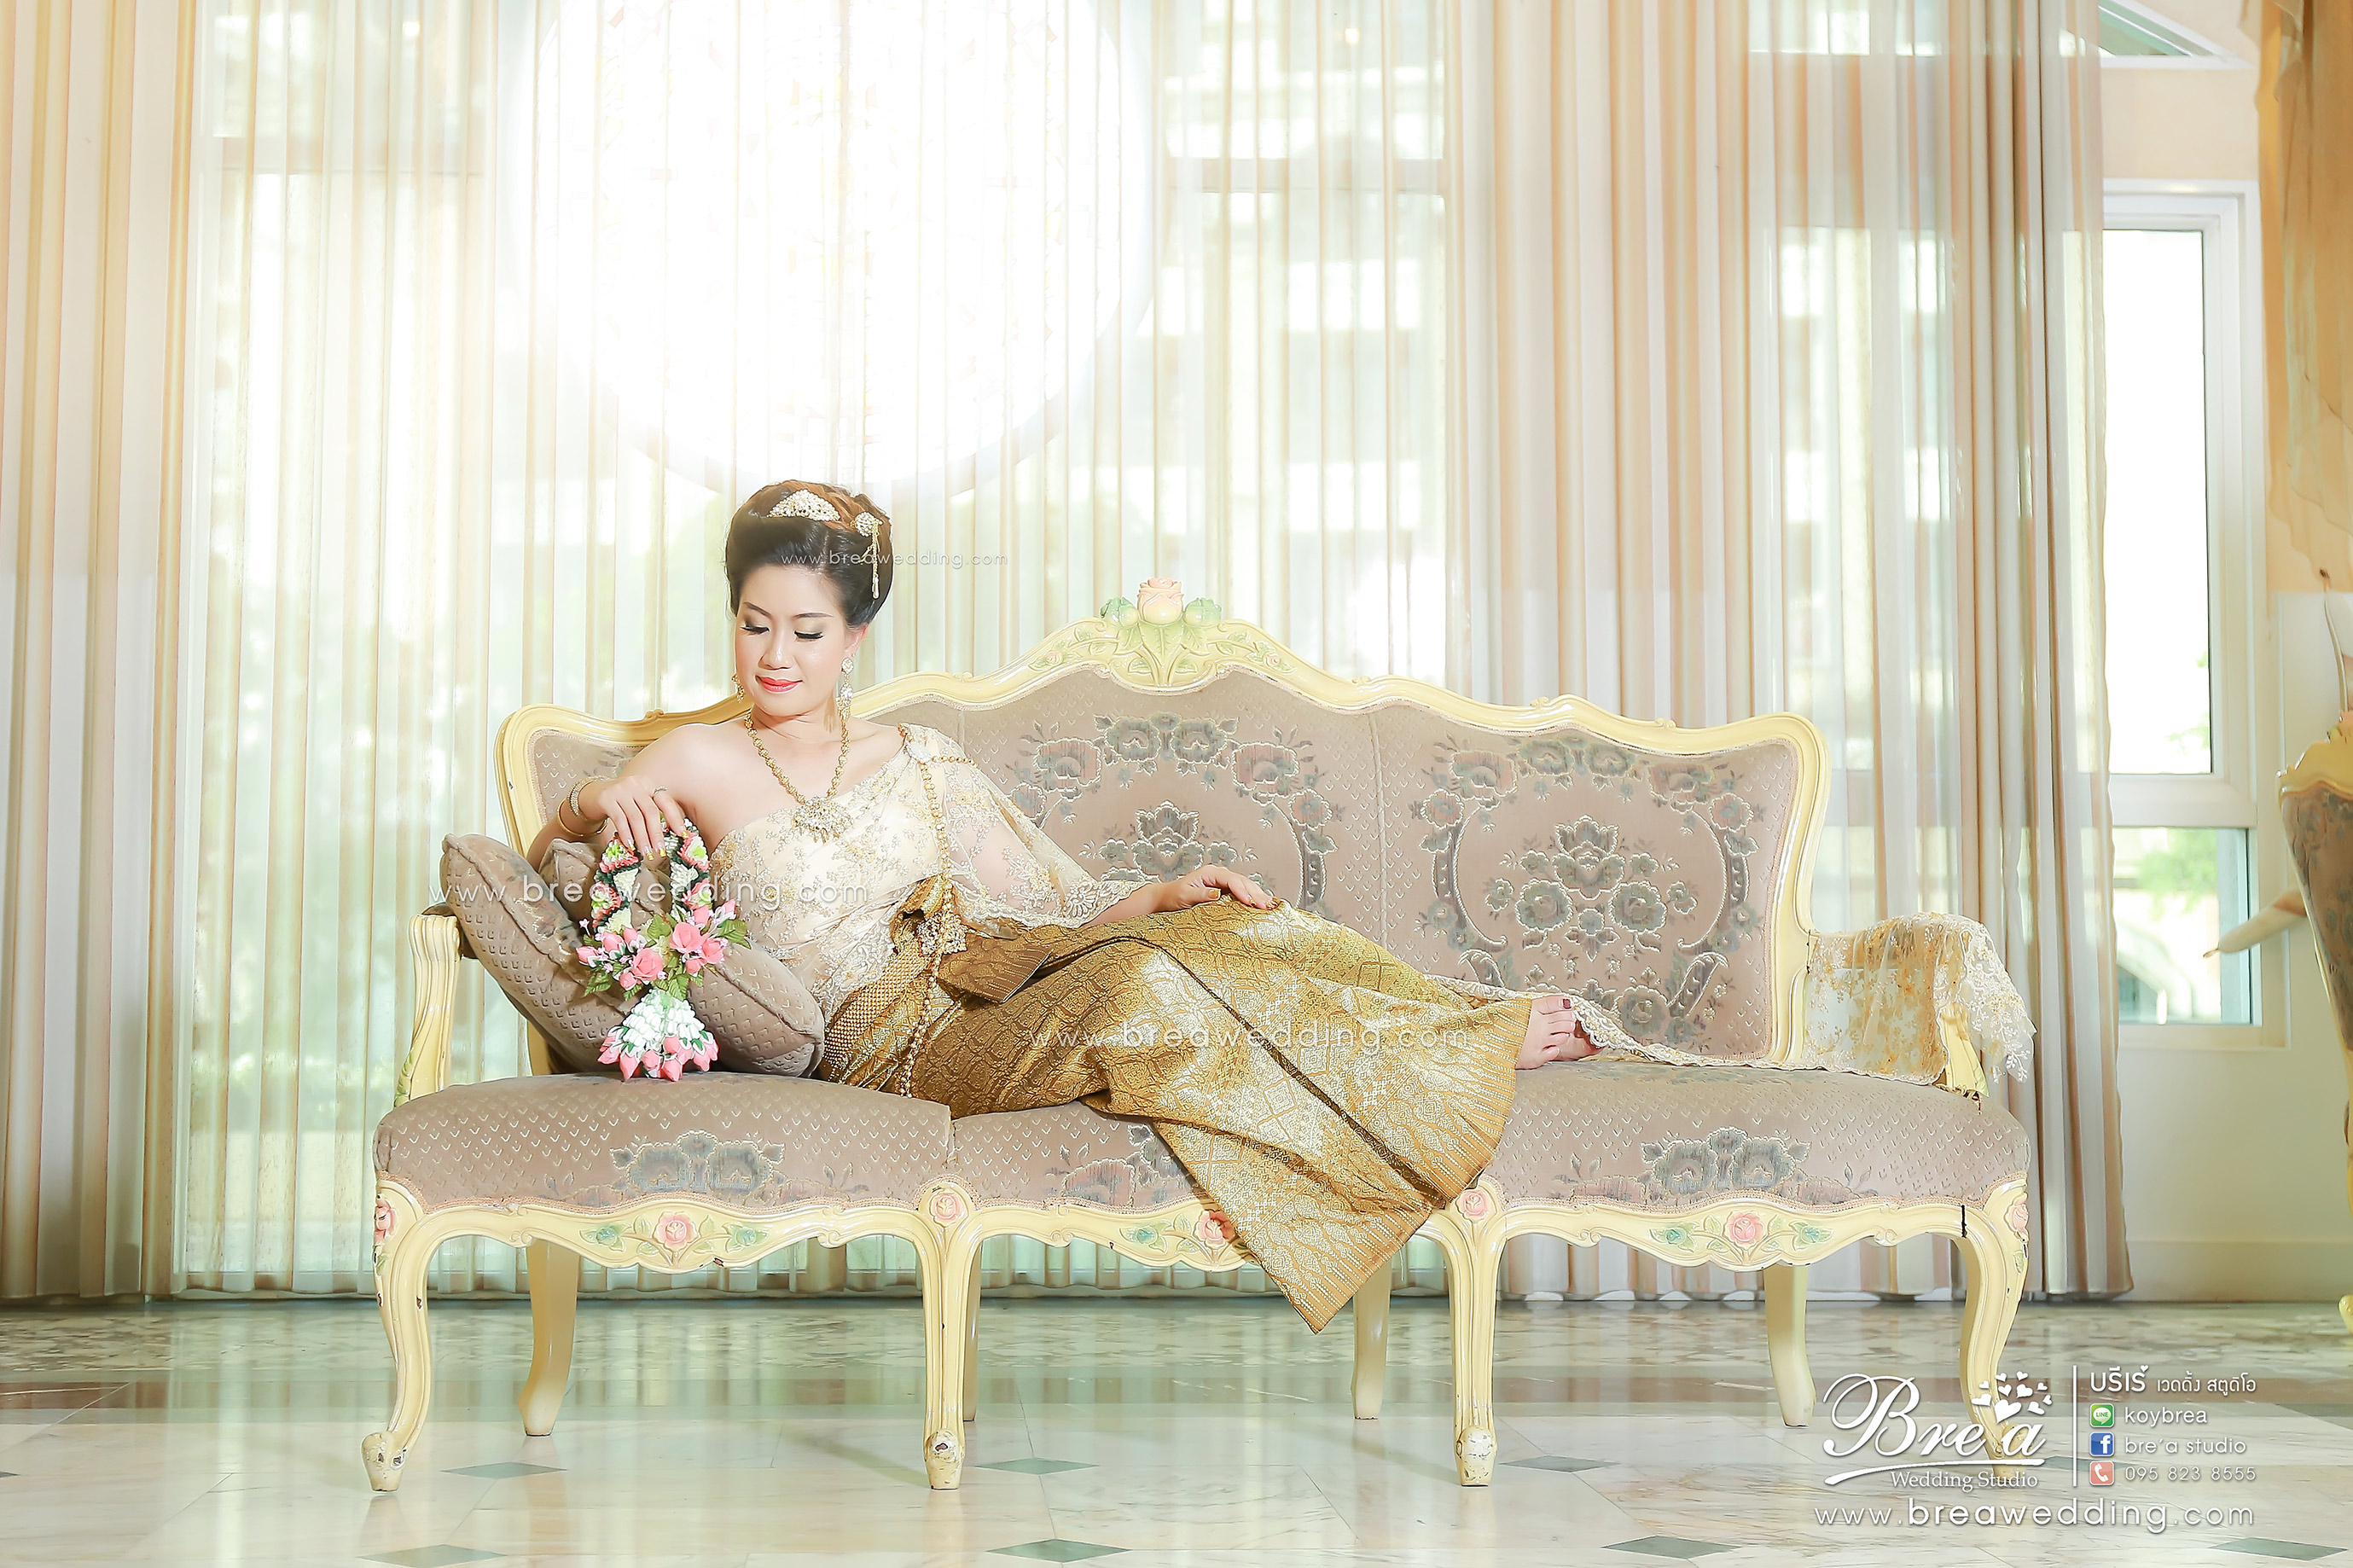 ชุดแต่งงาน ชุดไทยแต่งงาน ถ่ายรูปแต่งงาน ร้านเวดดิ้ง นนทบุรี